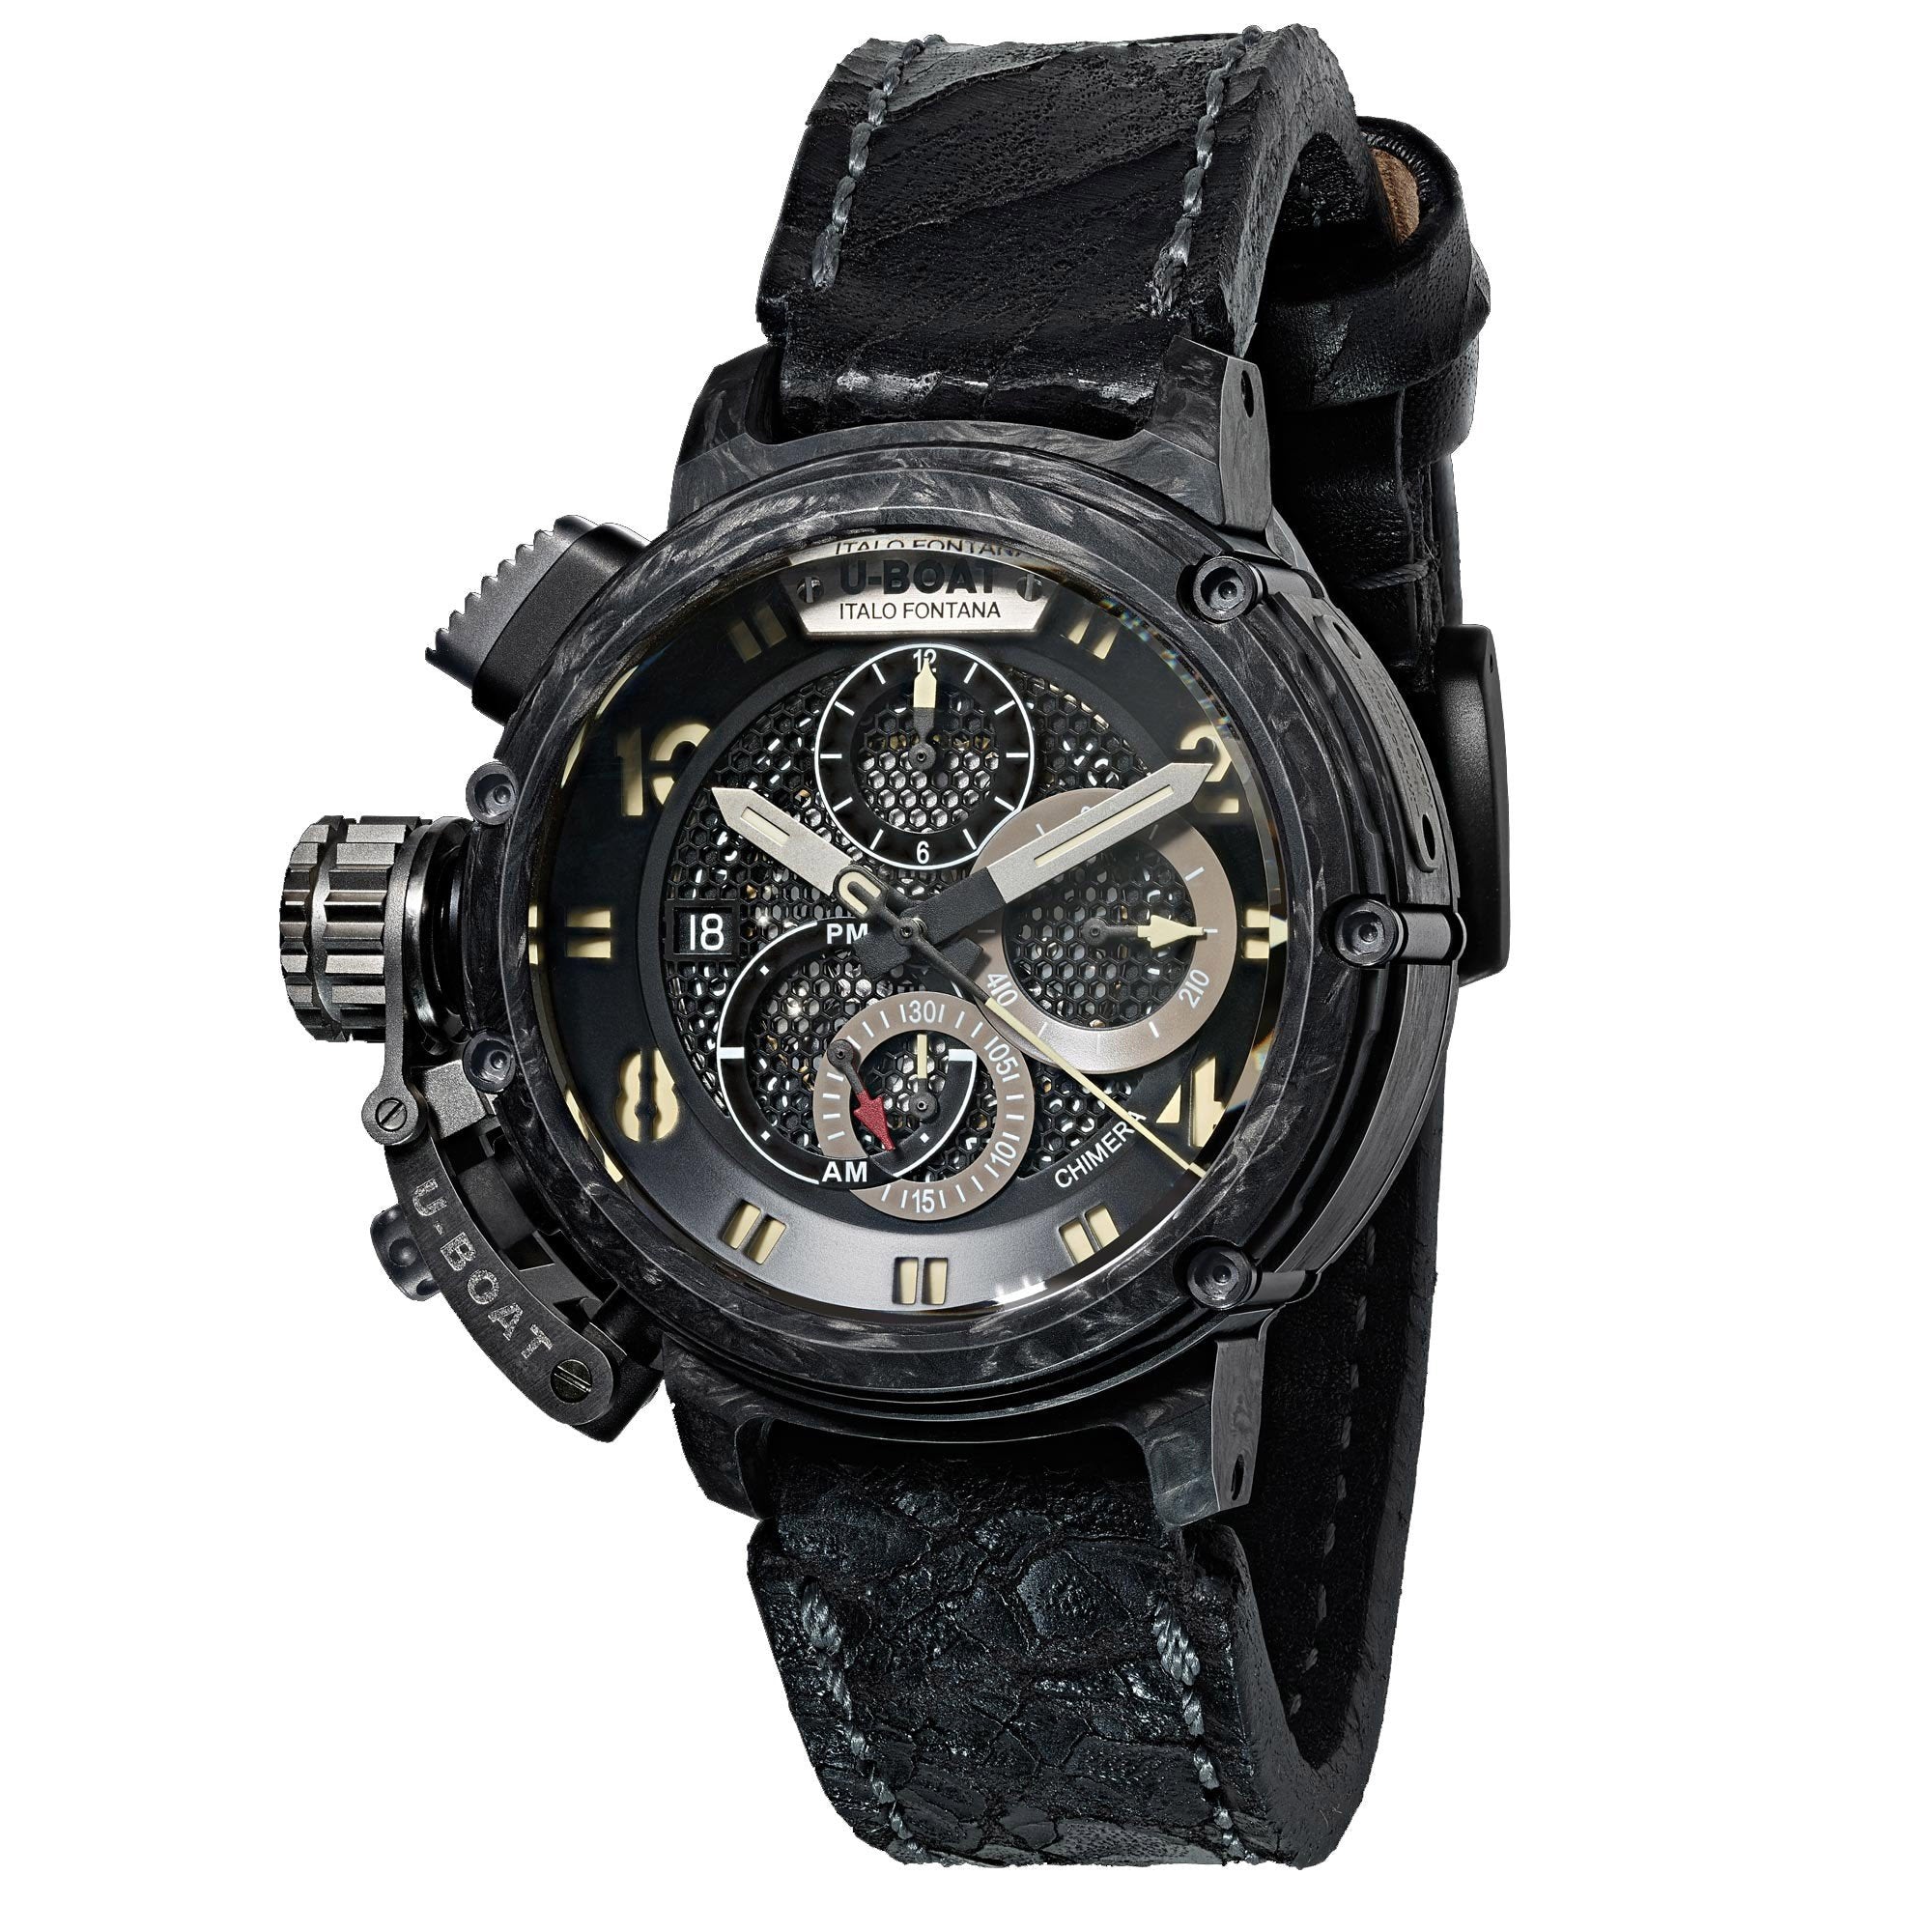 U-BOAT orologio Chimera 46mm cronografo carbonio e titanio edizione limitata 888 pezzi 8057 - Gioielleria Capodagli